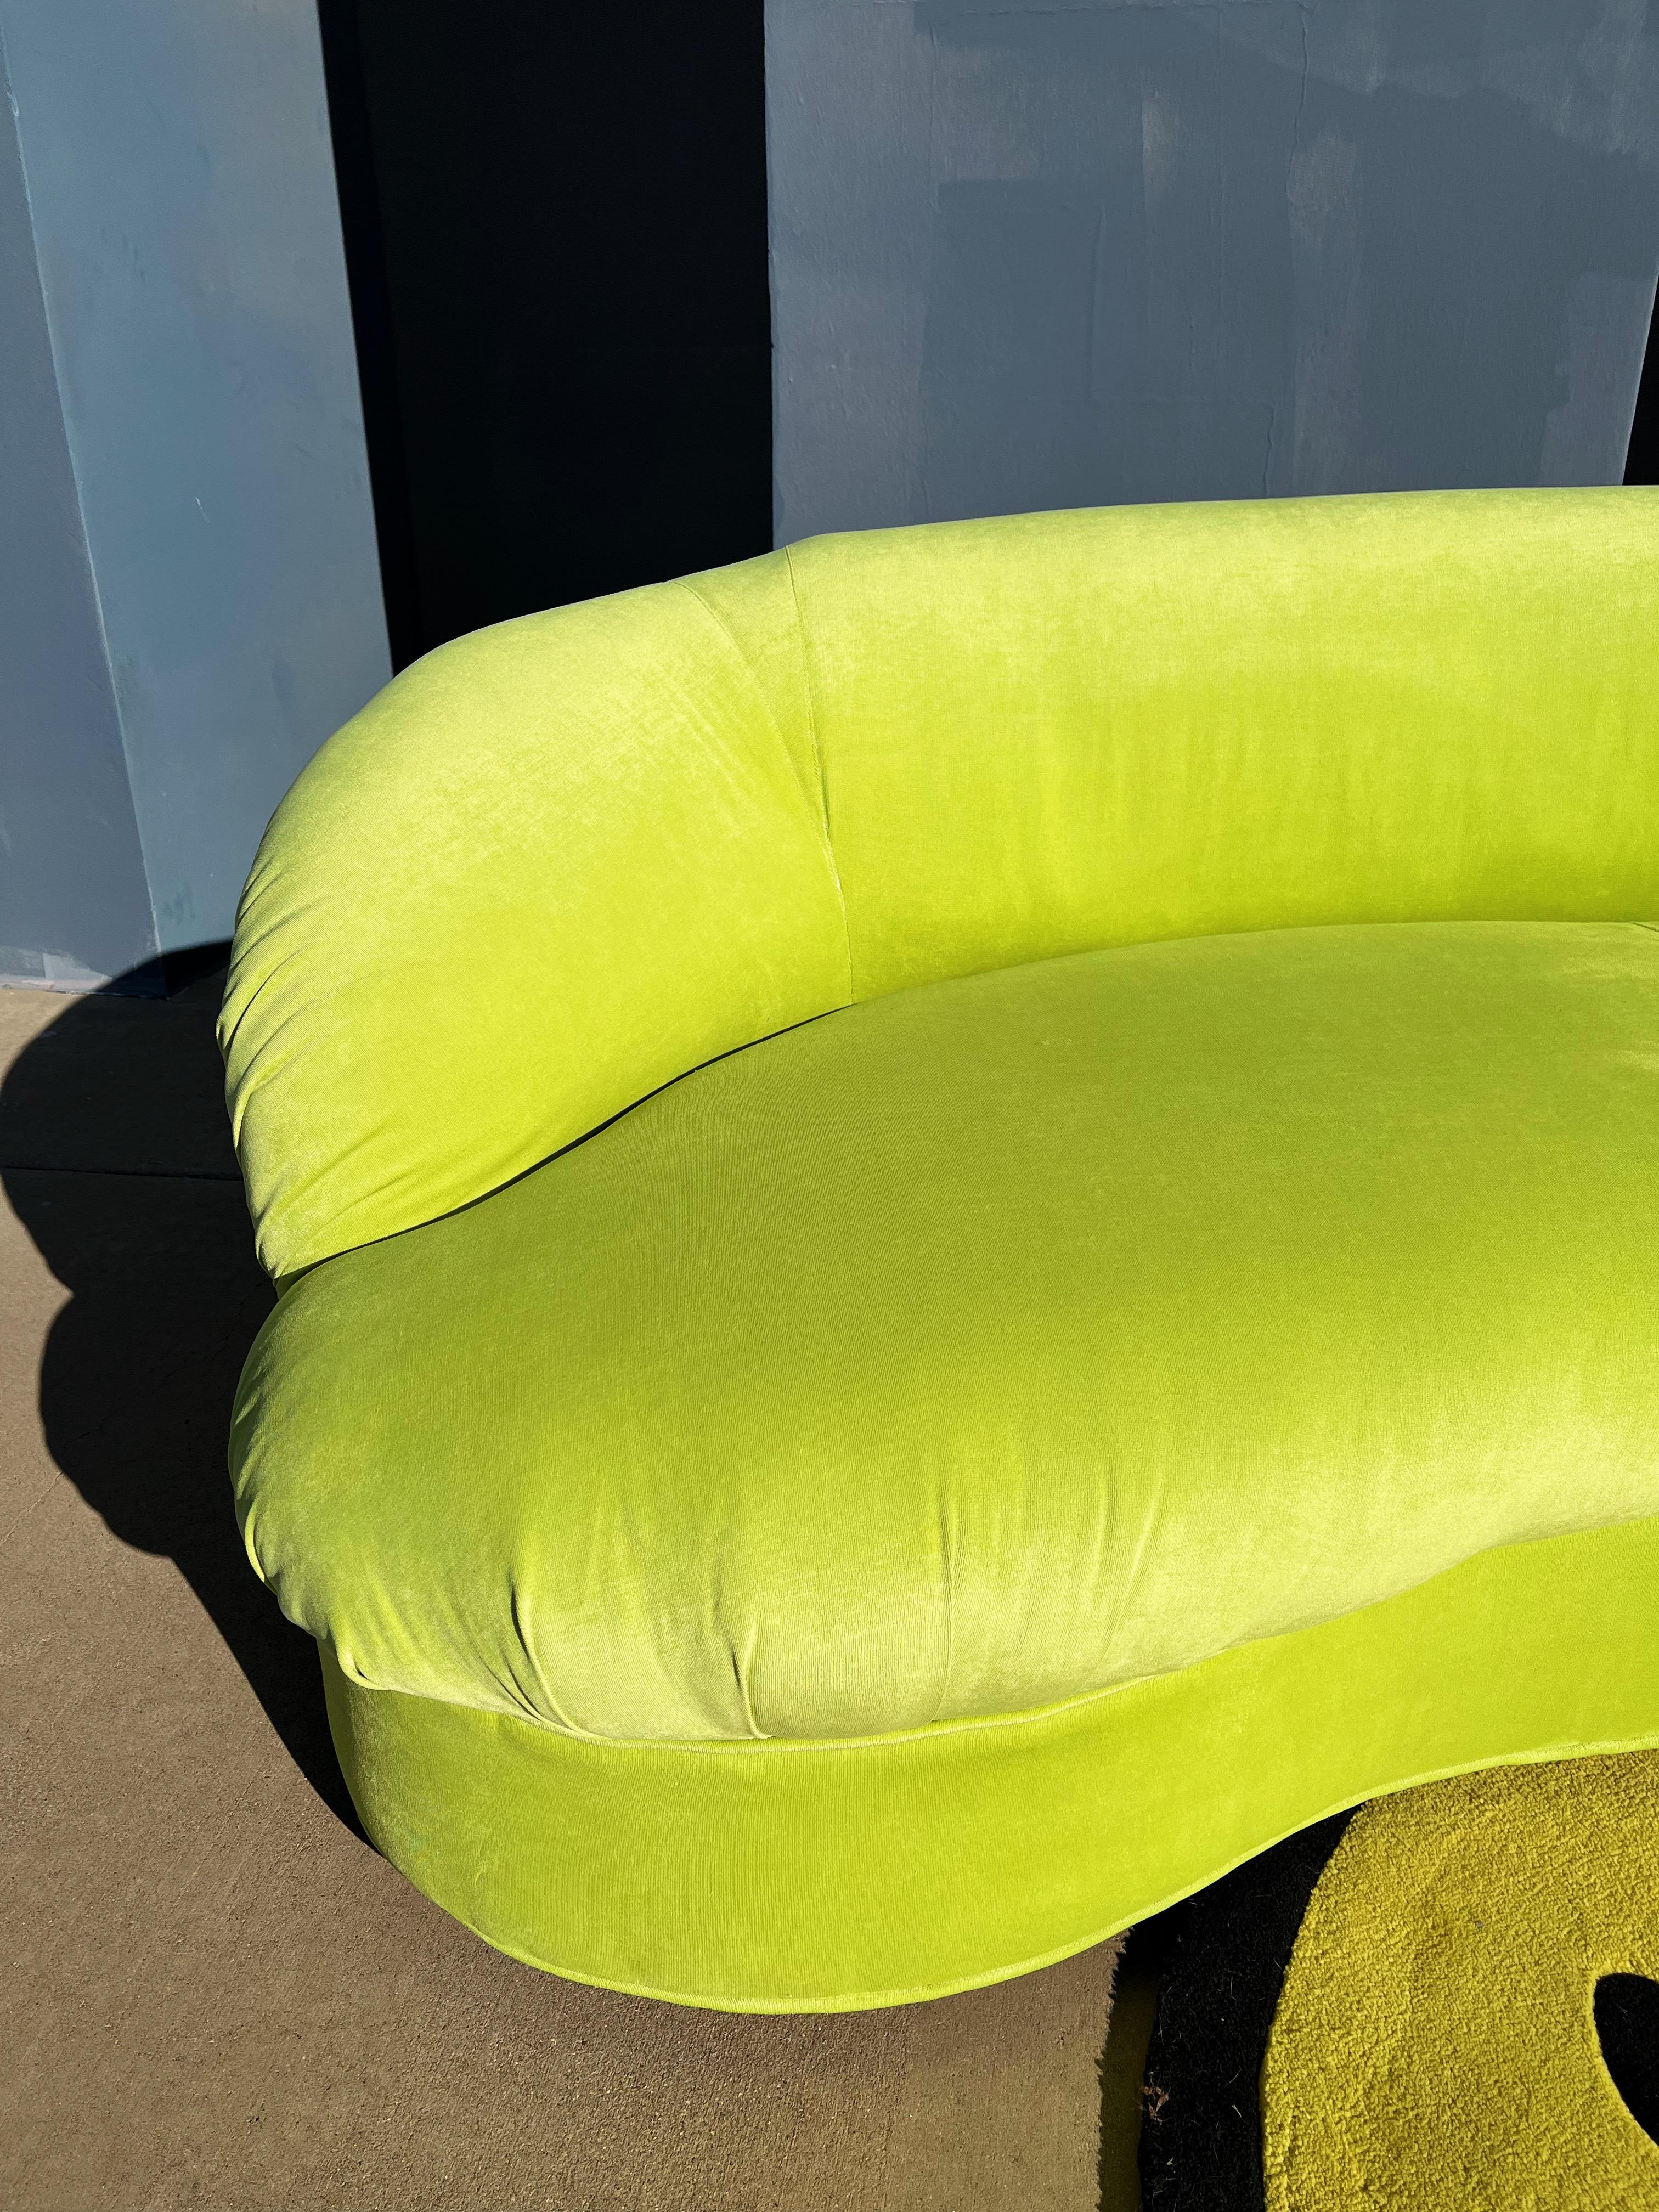 Canapé incurvé vintage vert vif, nouvellement tapissé de velours vert pomme vibrant.

En très bon état, nouvelle tapisserie, l'objet que votre salon/bureau attendait depuis longtemps.

84 